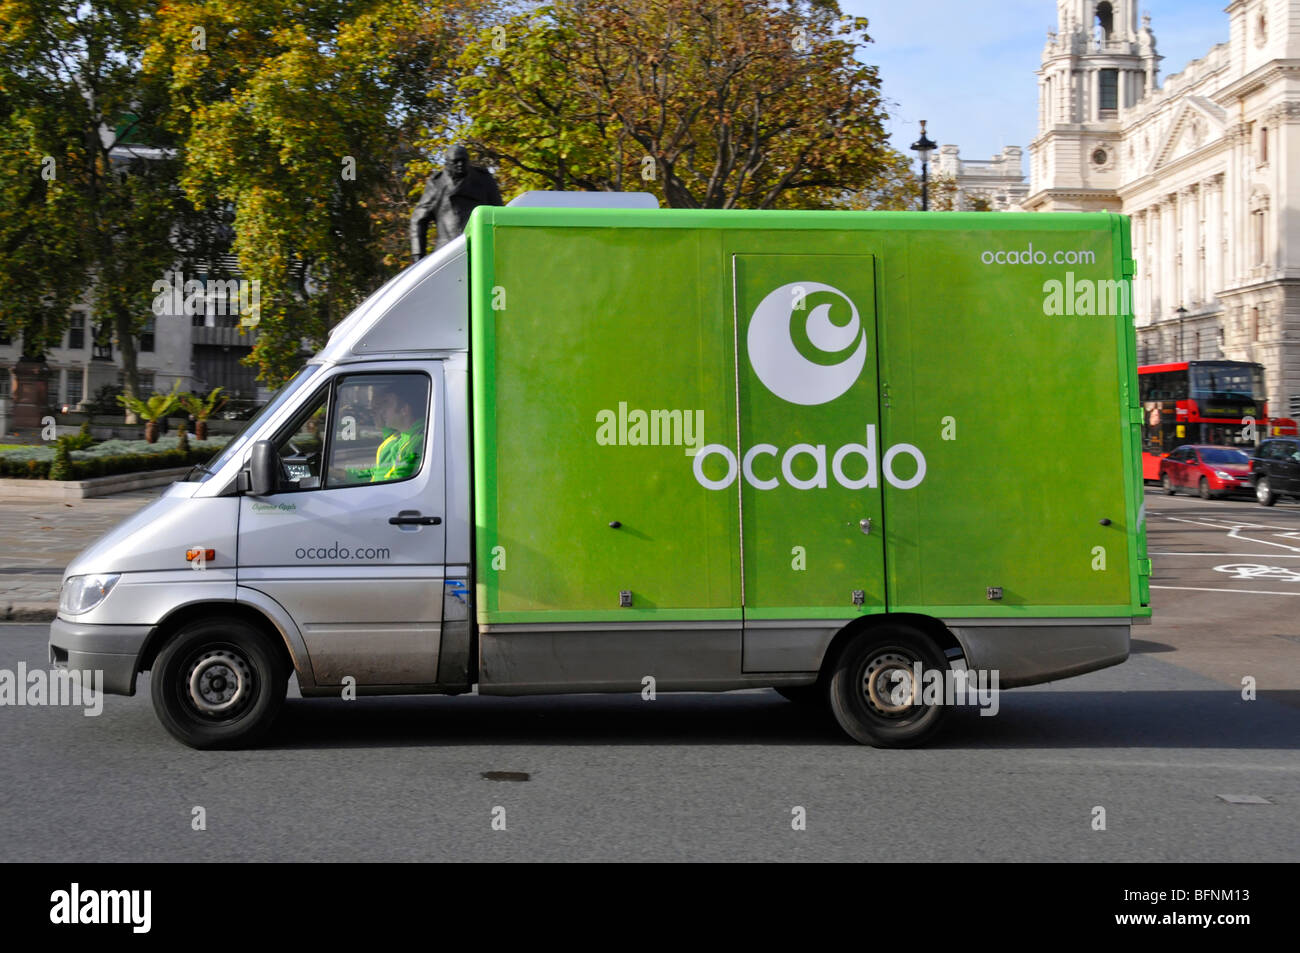 Ocado Lebensmittel food Supply Chain business Lieferung van Fahrer und Gehilfen in Parliament Square London England Großbritannien Stockfoto